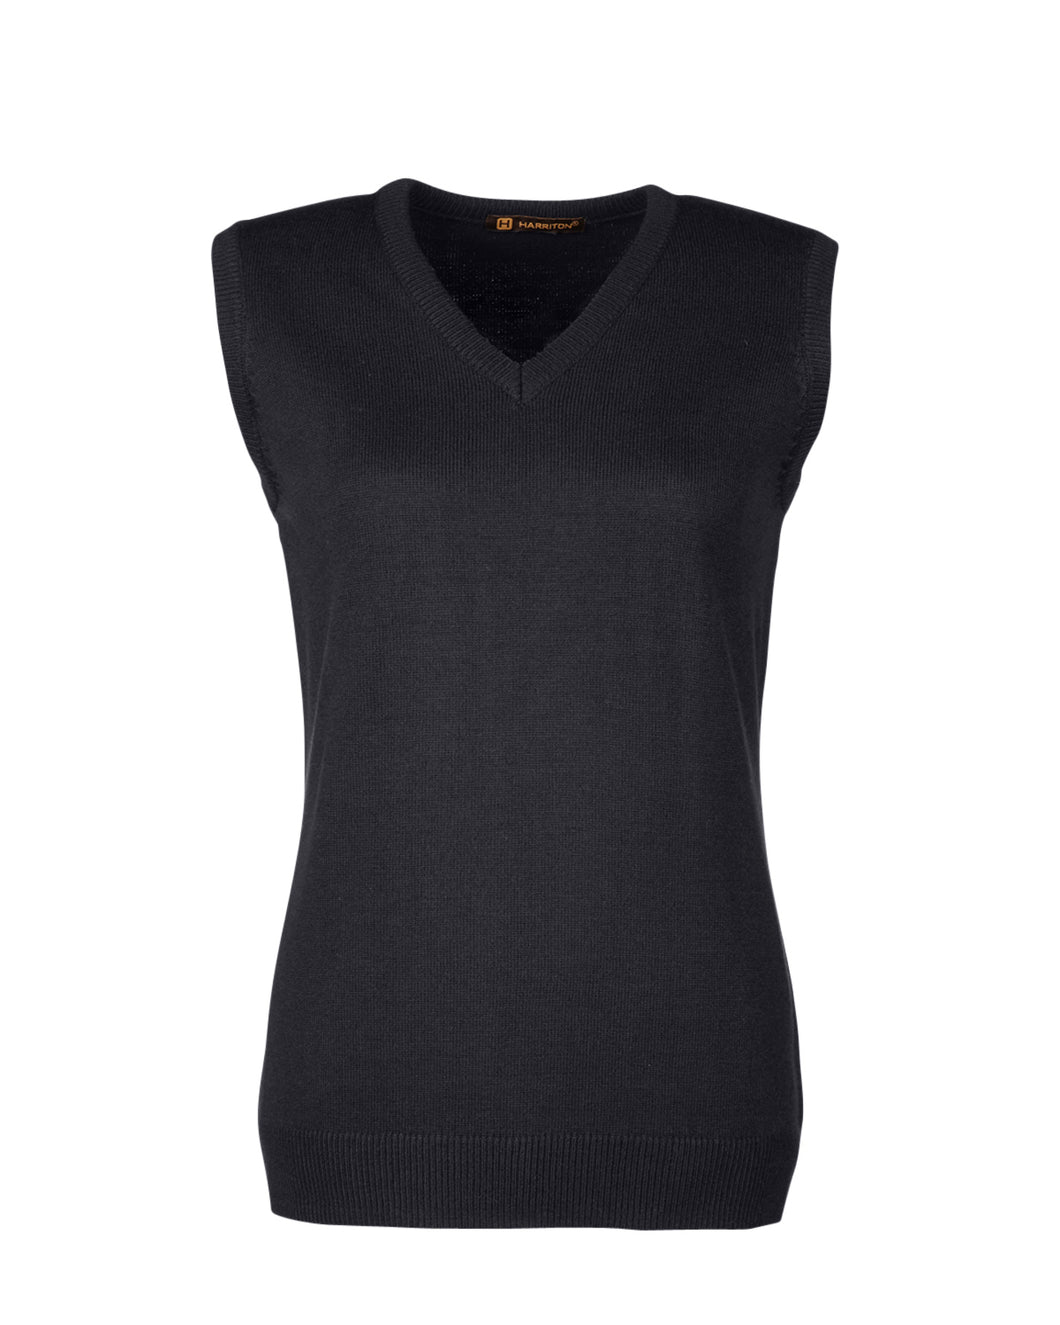 Harriton Ladies' Pilbloc™ V-Neck Sweater Vest. M415W